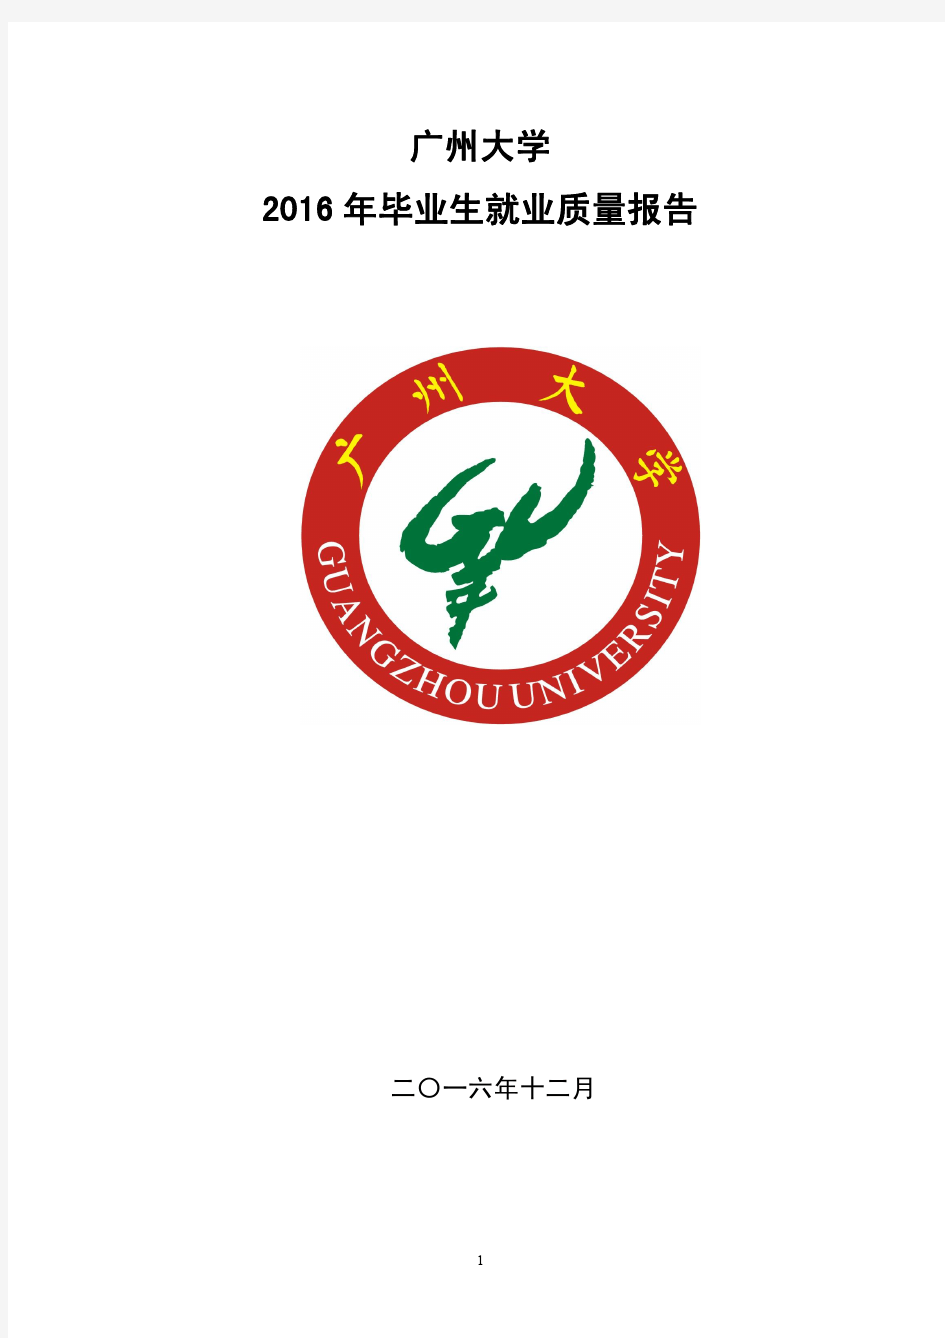 广州大学2016年毕业生就业质量报告